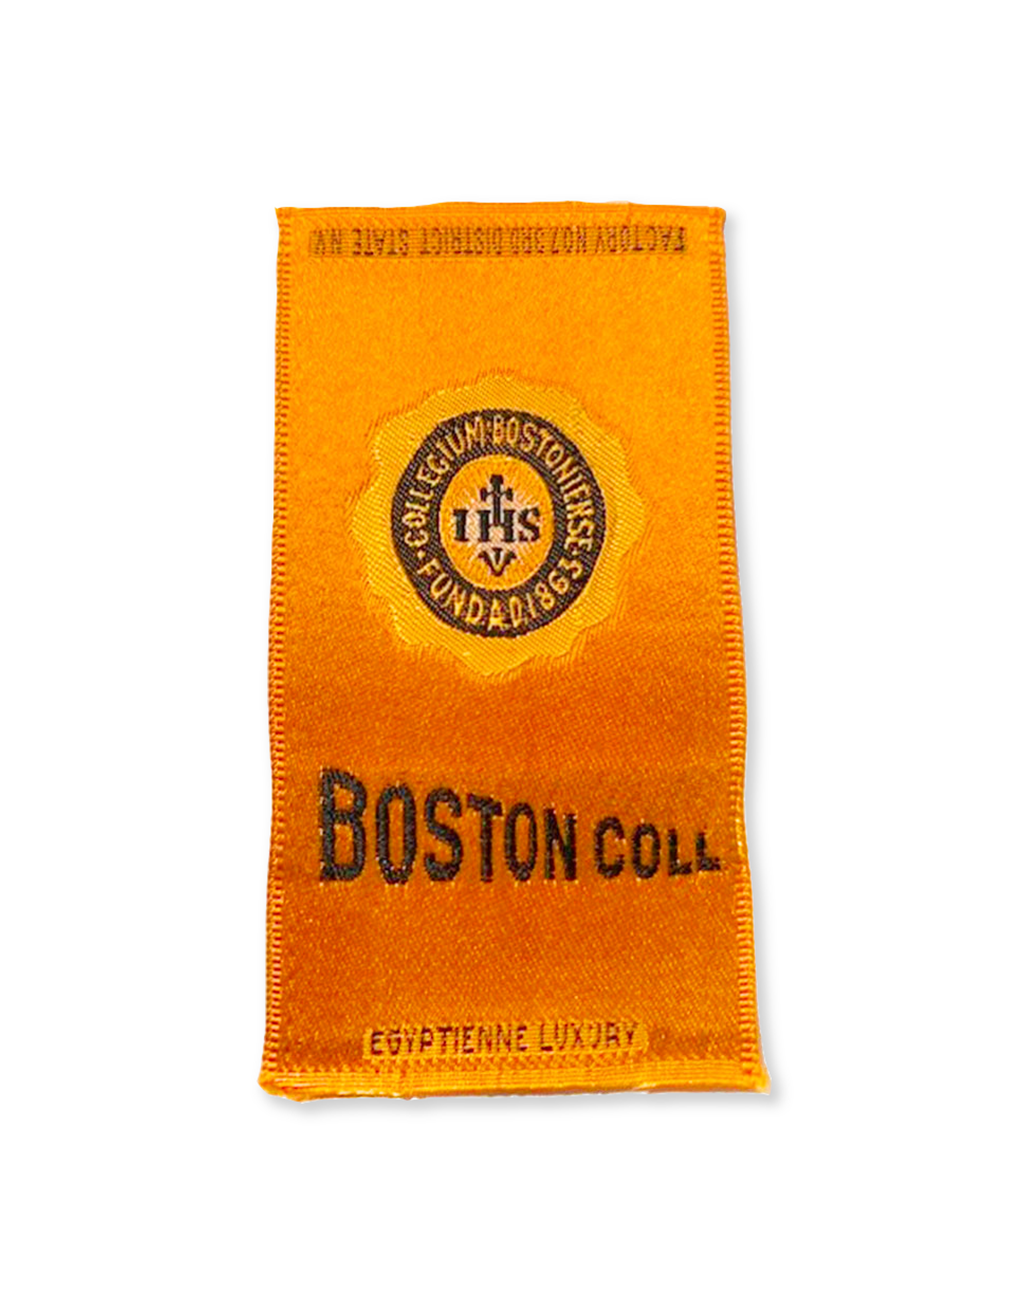 Boston College Silk Paperweight